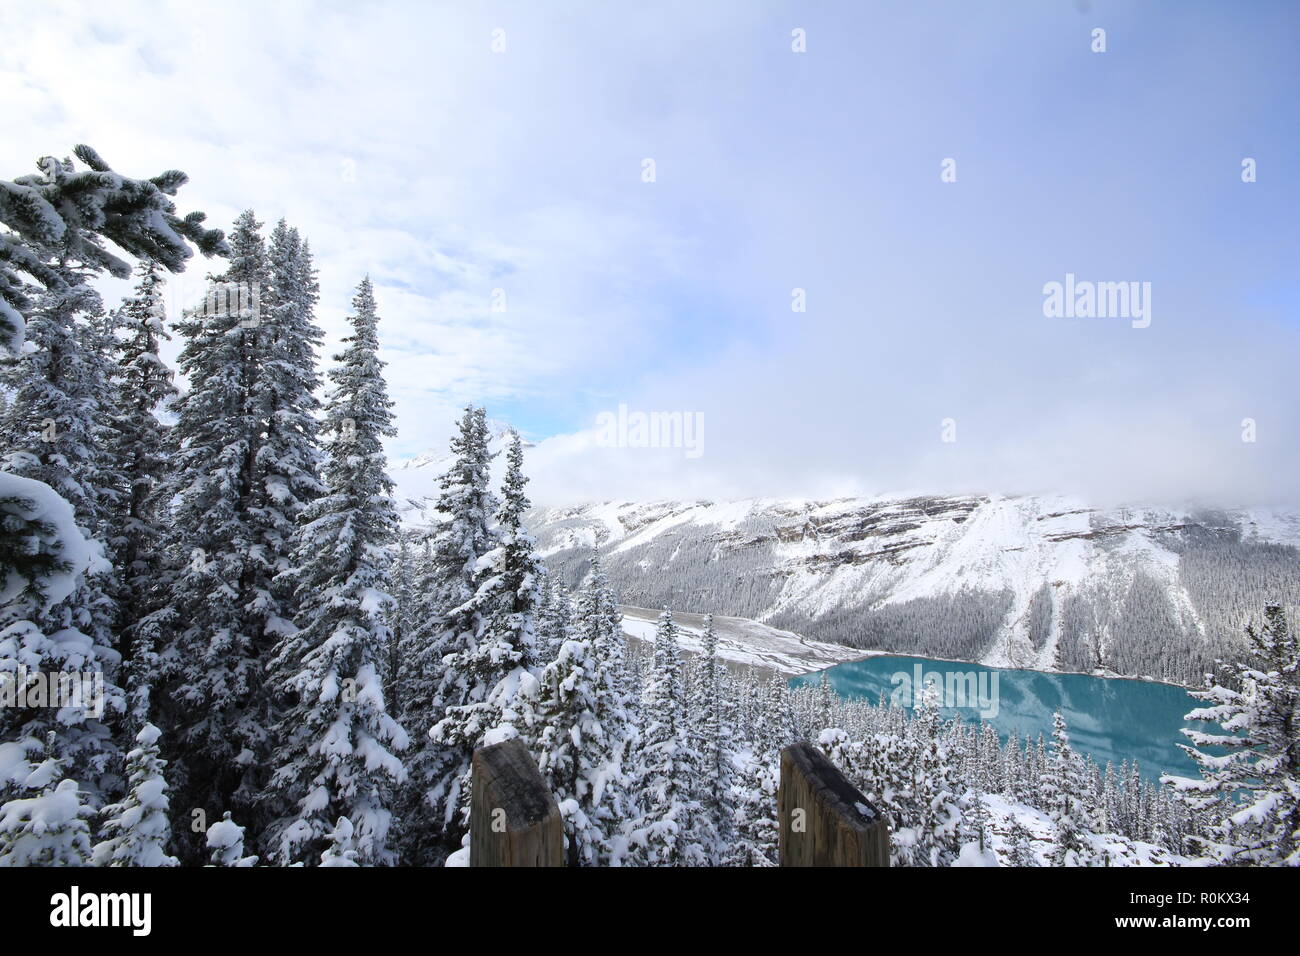 Spettacolare scena invernale presso il Lago Peyto nel Parco Nazionale di Banff, Canada, con le montagne e gli alberi coperti di neve. Immagine del tour popolare attrazione. Foto Stock